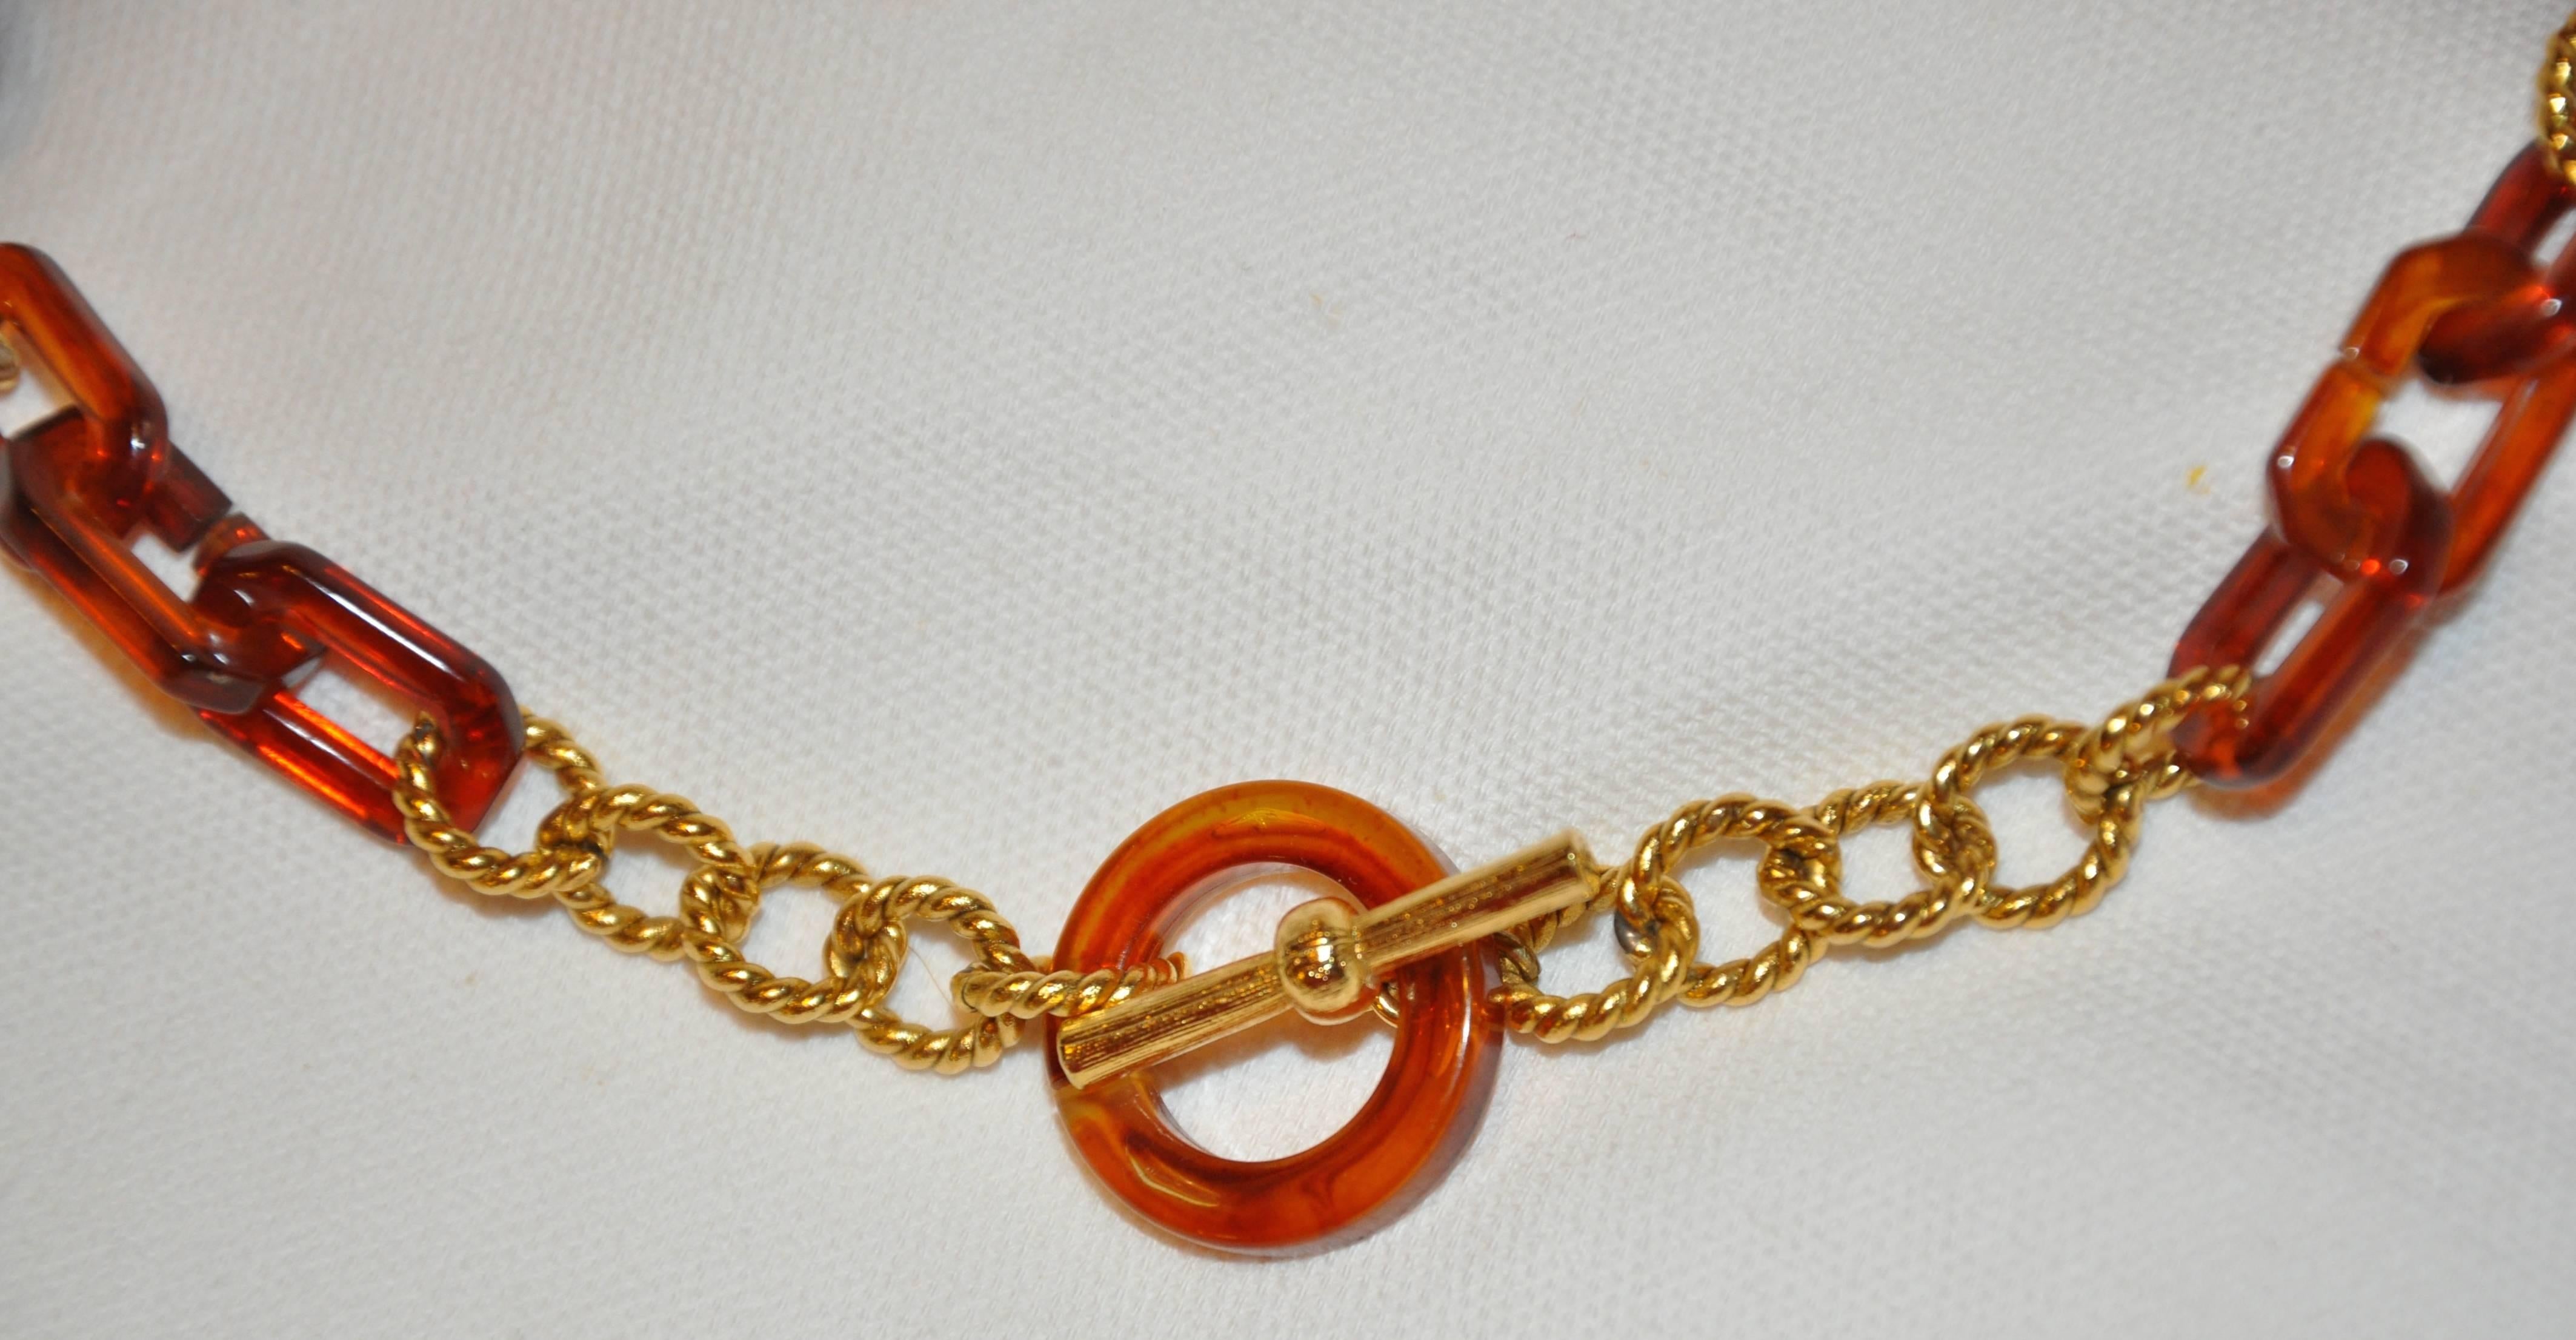 genuine lucite necklace